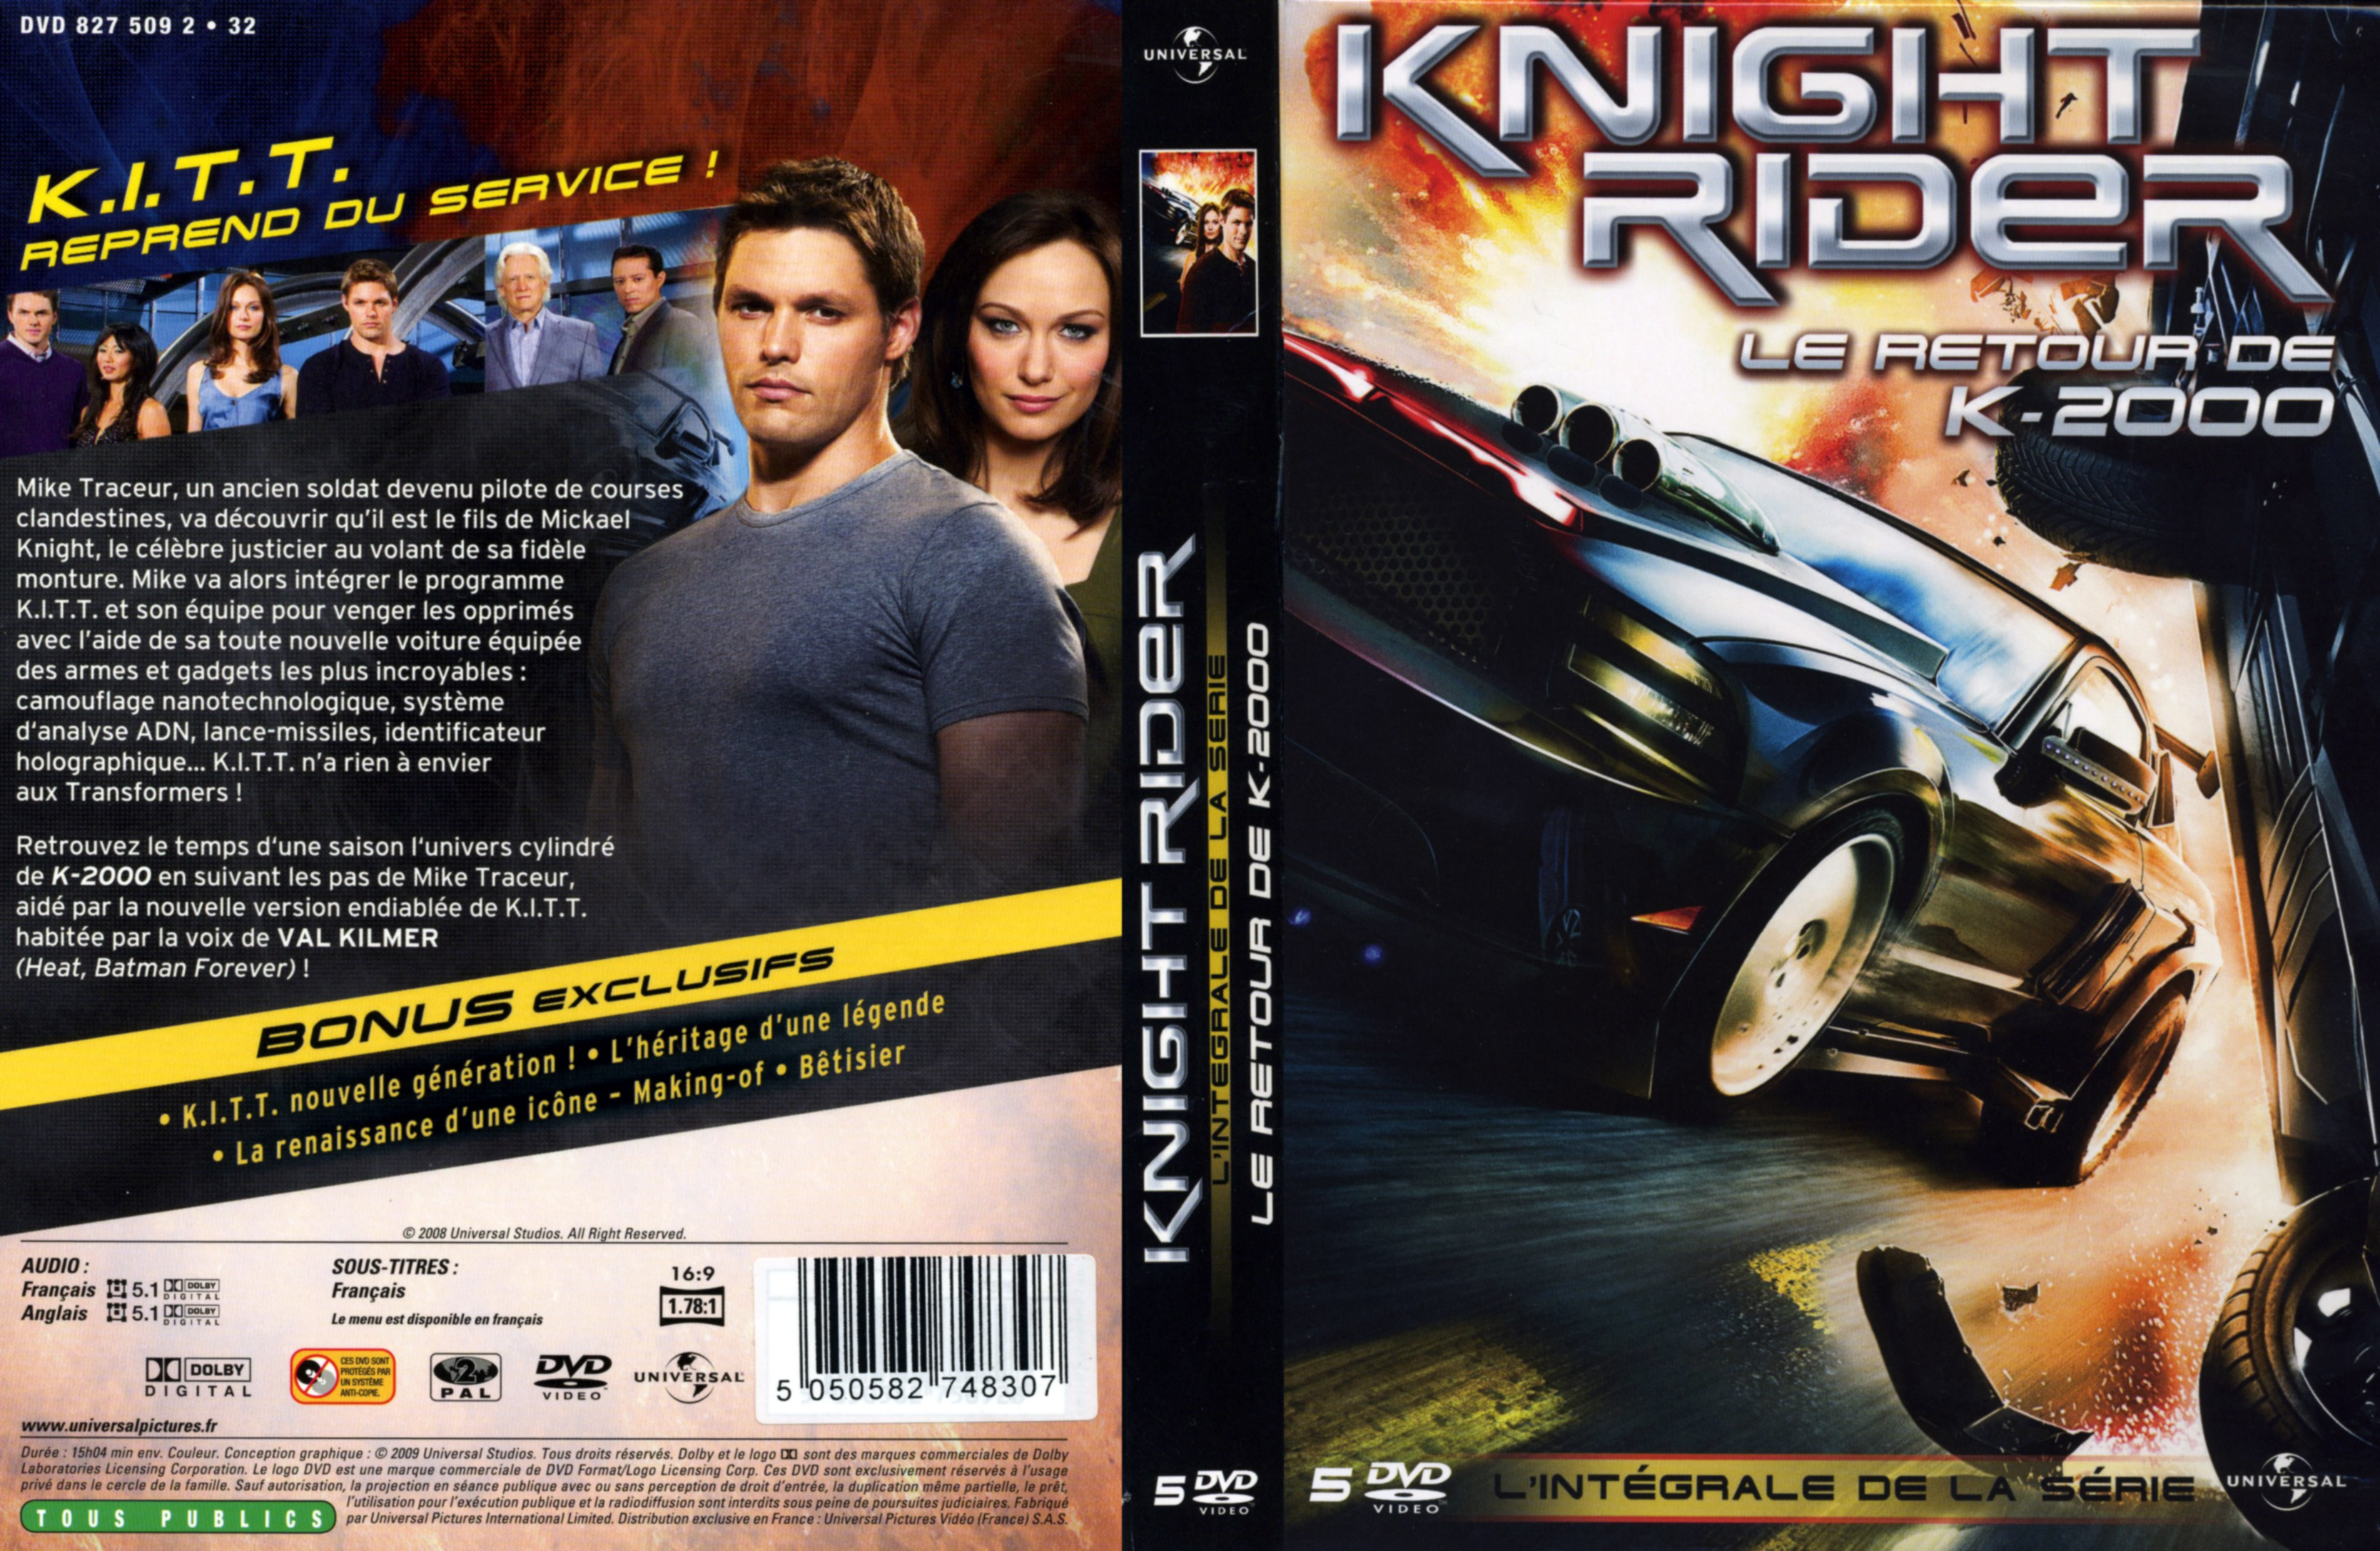 Jaquette DVD Knight rider le retour de K2000